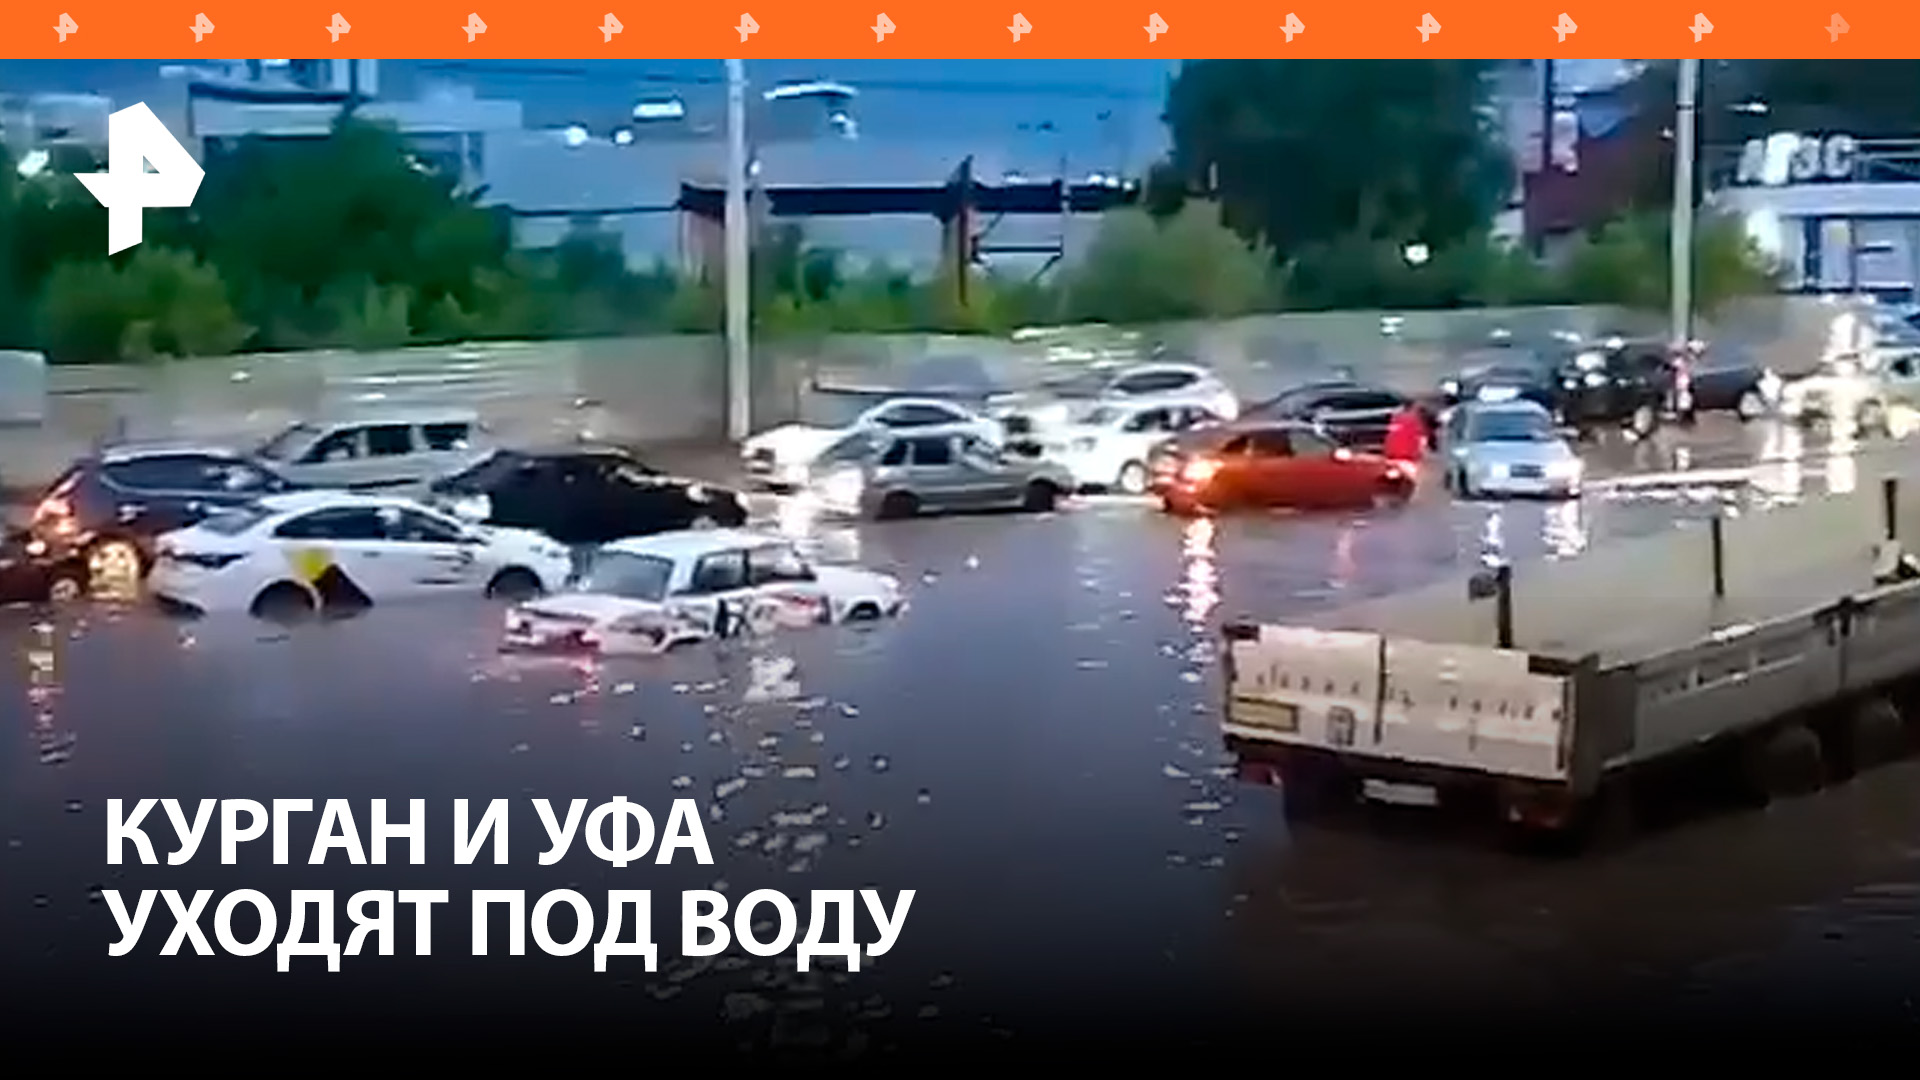 Курган и Уфа уходят под воду из-за сильных ливней / РЕН Новости